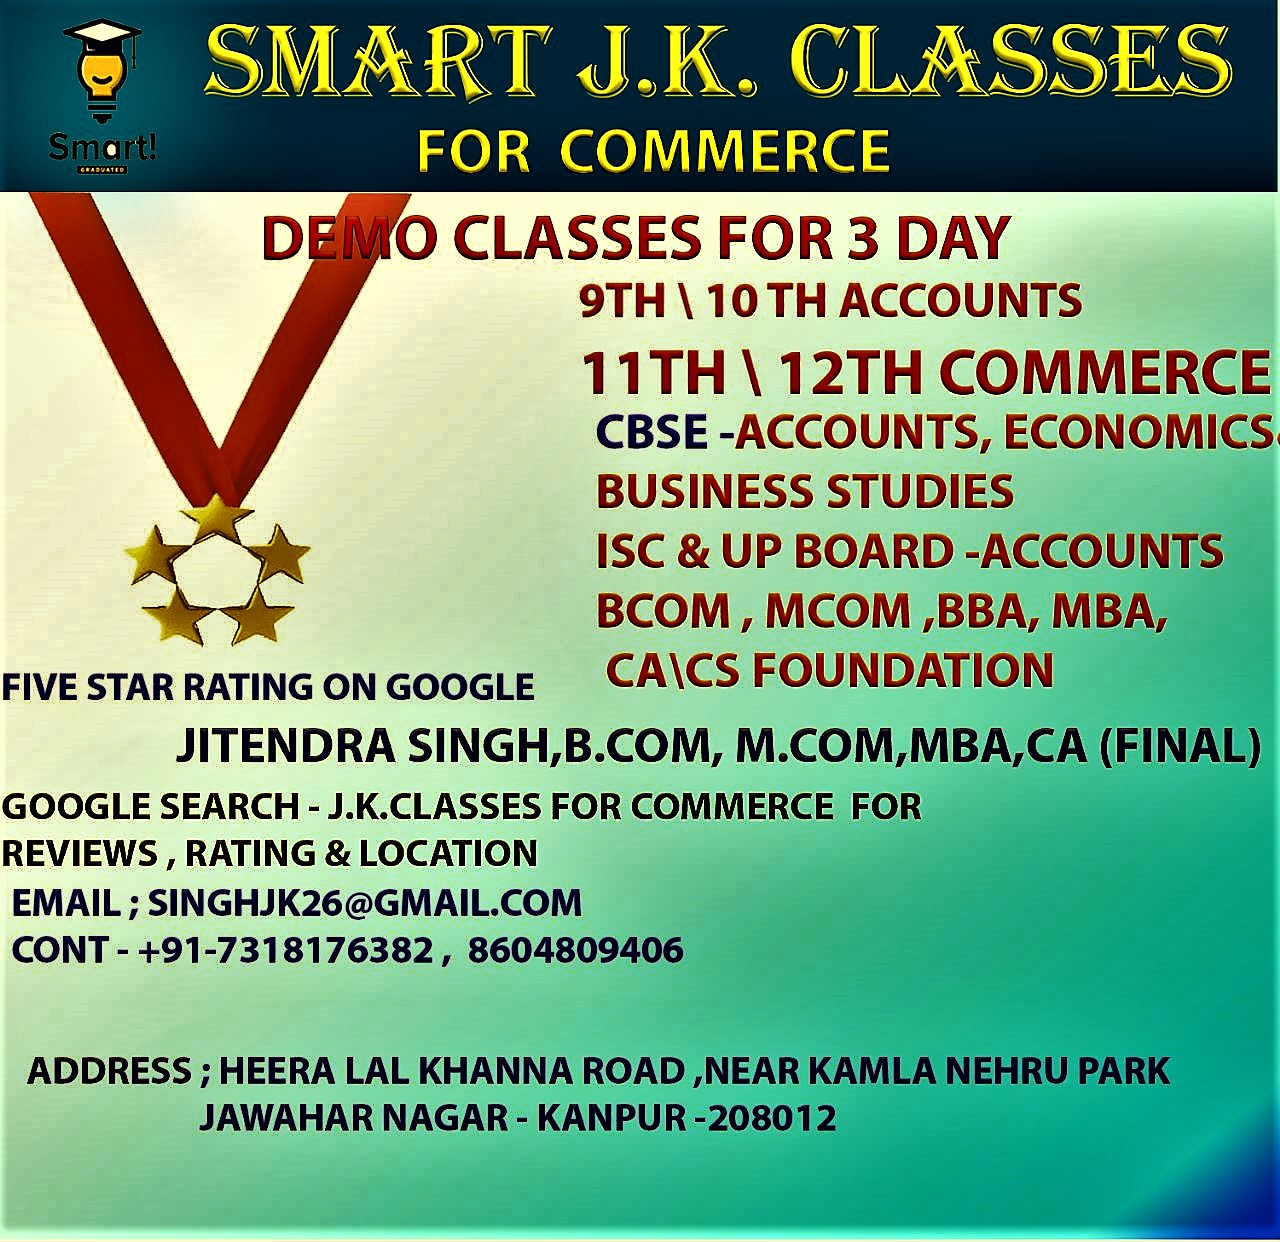 24089SMART J.K.CLASSES FOR COMMERCE
Accounts, Eco. BST
11th & 12th, B.Com, M.Com, BBA